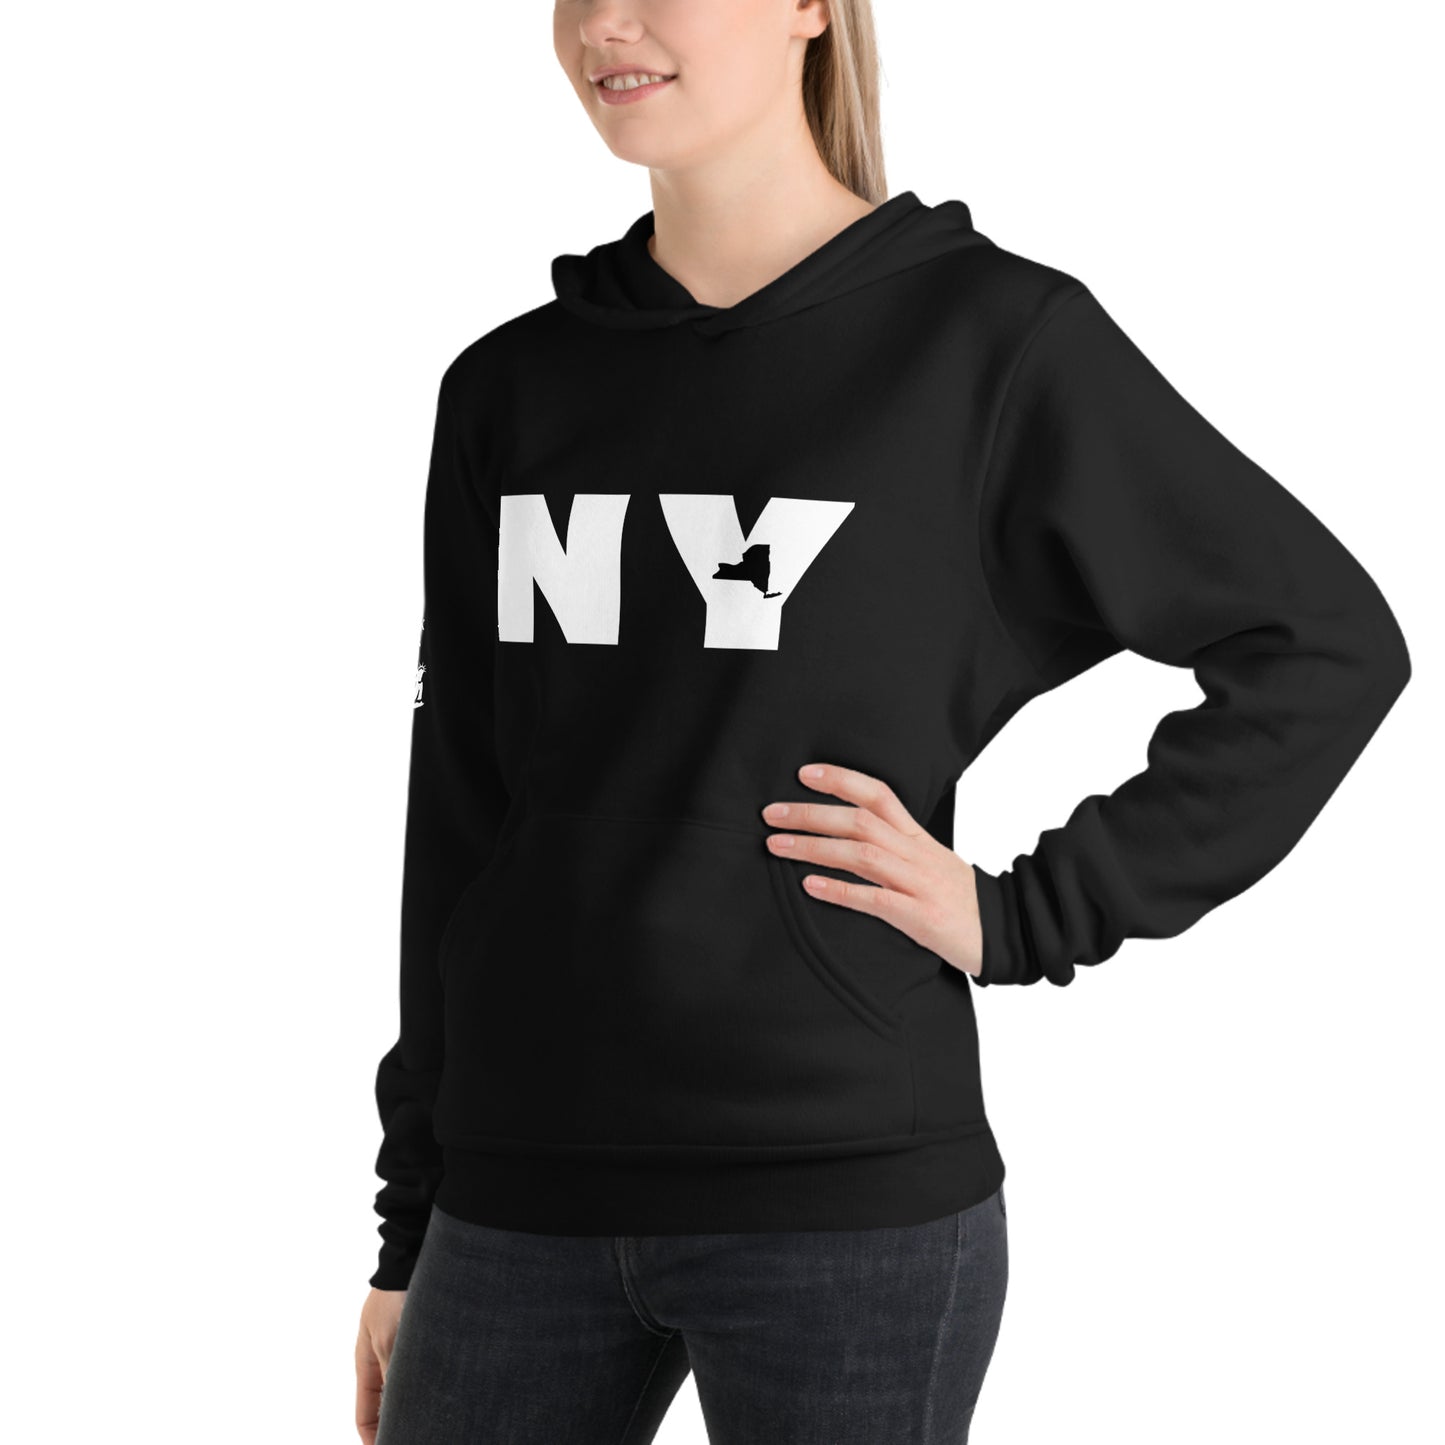 Unisex hoodie - NY (New York)